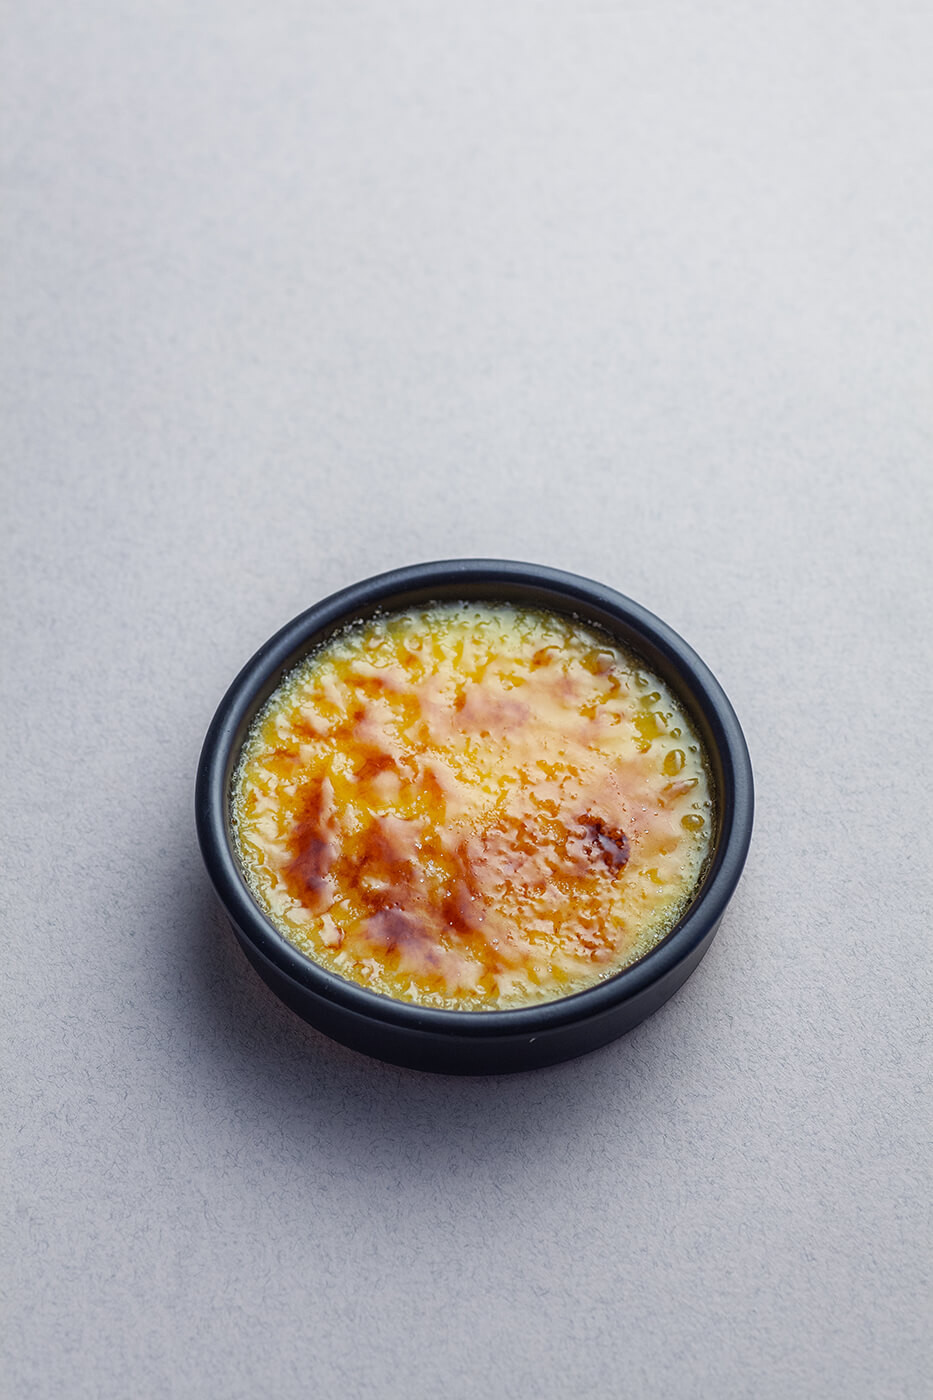 Crema catalana z warstwą skarmelizowanego cukru w miseczce.